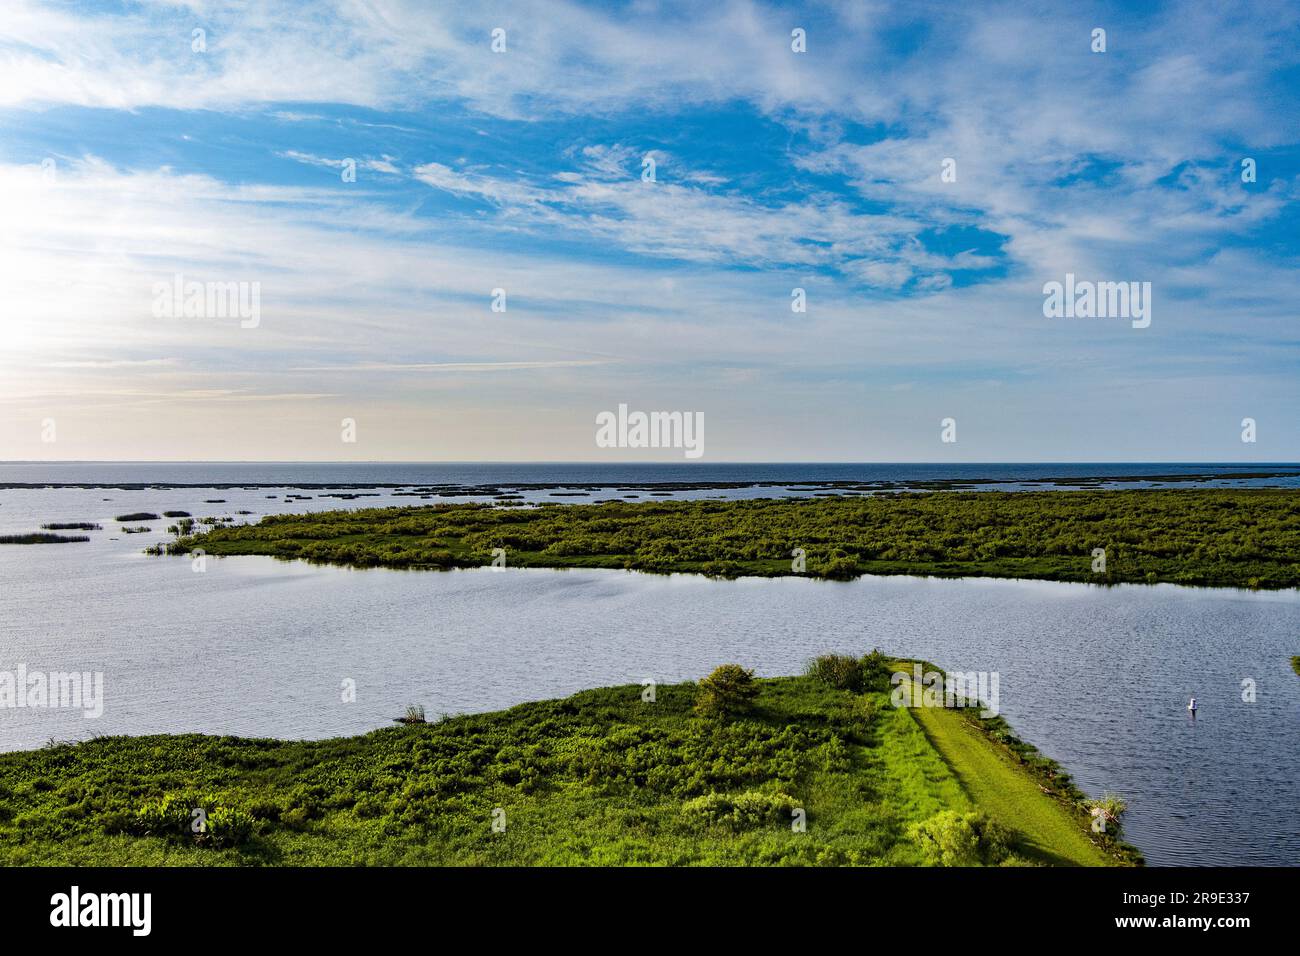 Vue aérienne sur le lac Okeechobee entouré d'une végétation luxuriante en Floride, aux États-Unis Banque D'Images